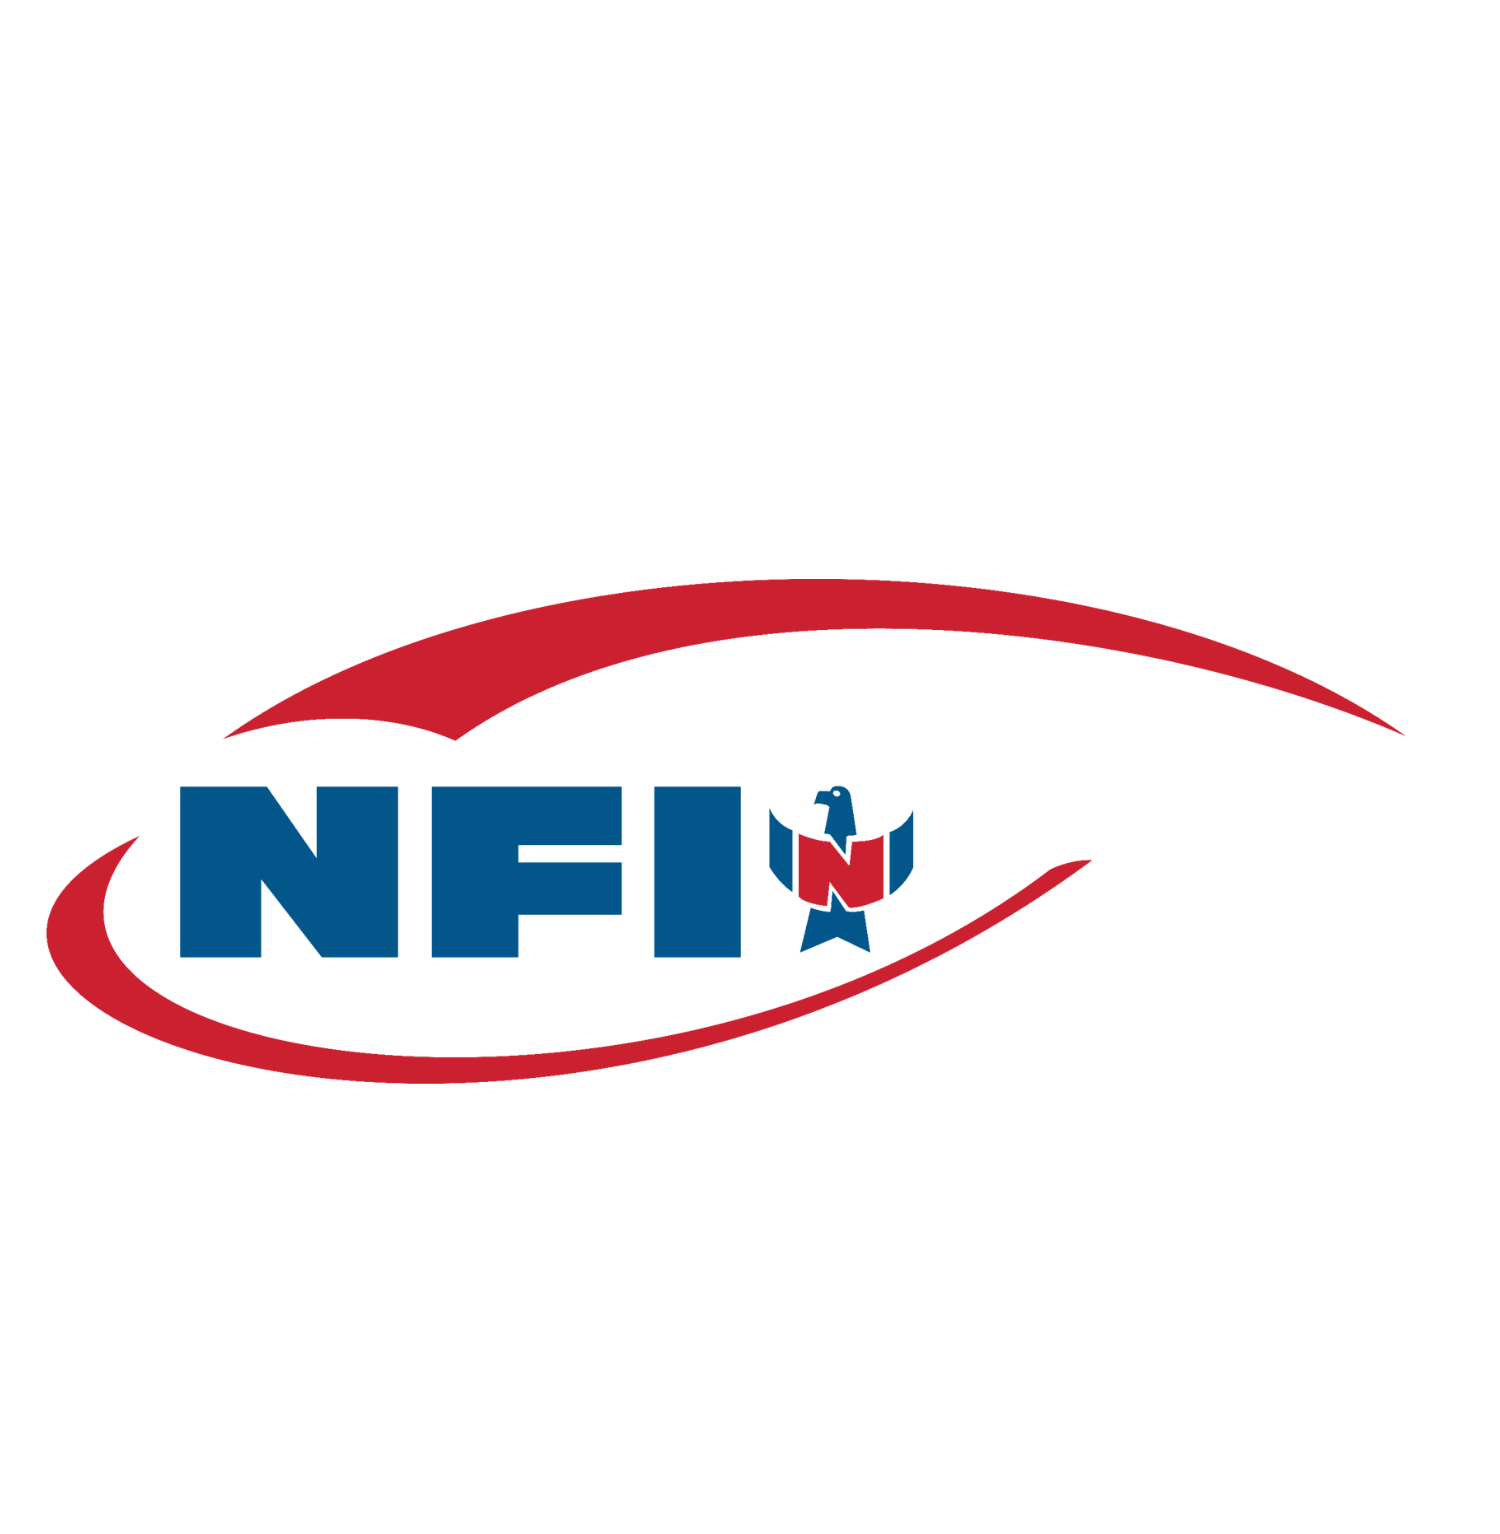 ENTERPRISE - NFI Industries-1